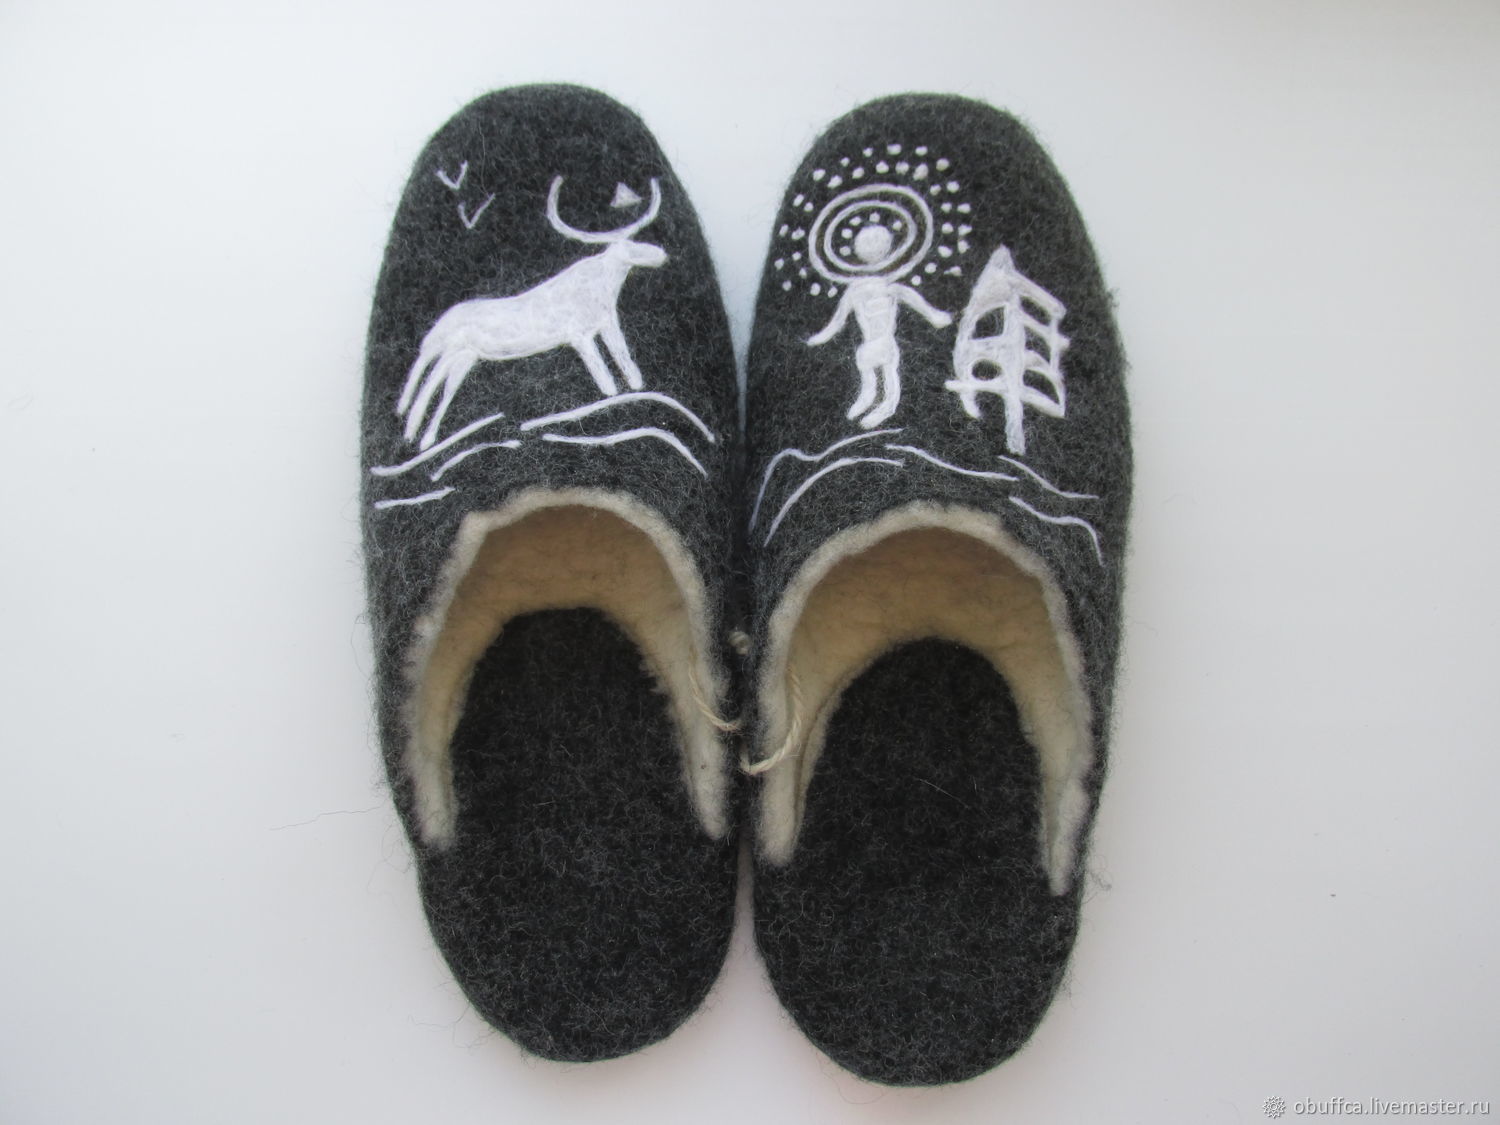 Men's felt Slippers made of Merino wool prevention, Slippers, Kazan,  Фото №1